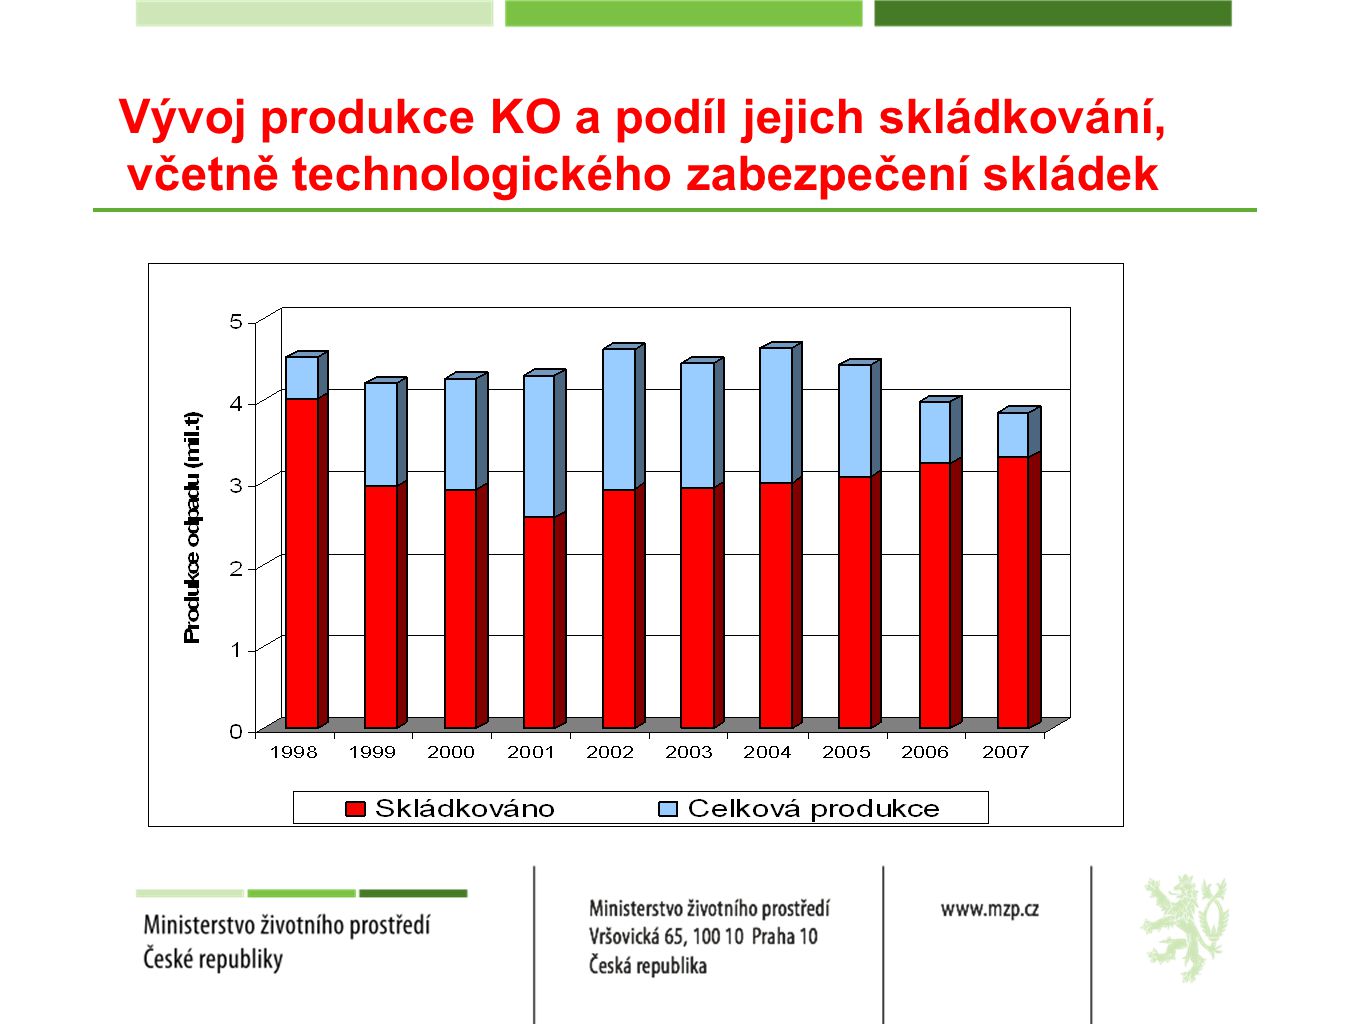 Vývoj produkce KO a podíl jejich skládkování, včetně technologického zabezpečení skládek